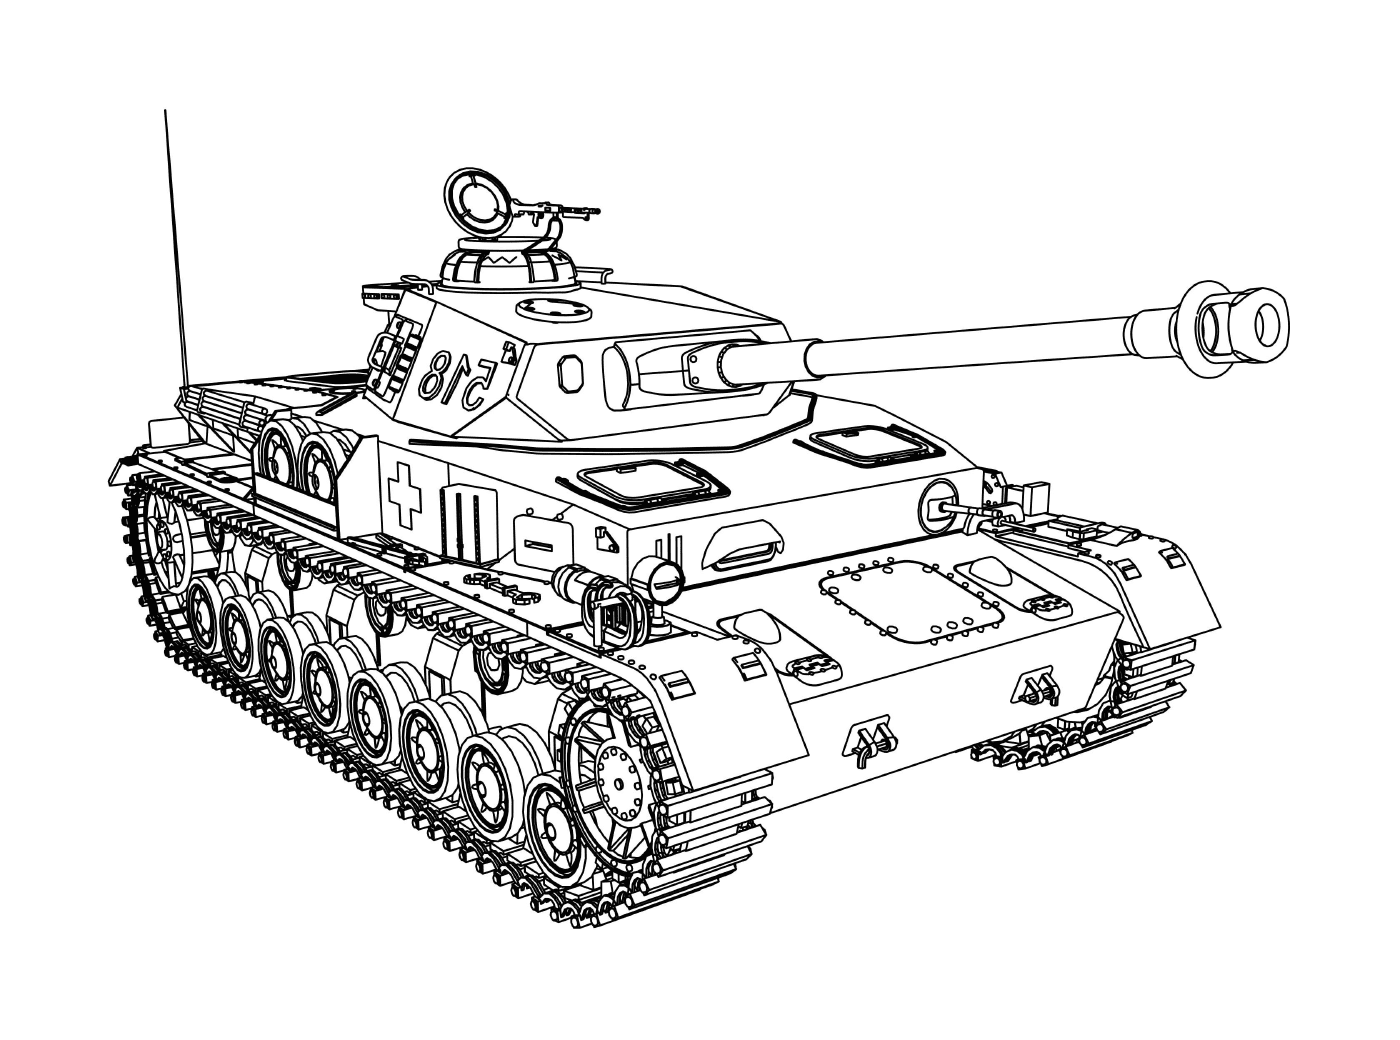  Veículo militar: um antigo tanque militar 